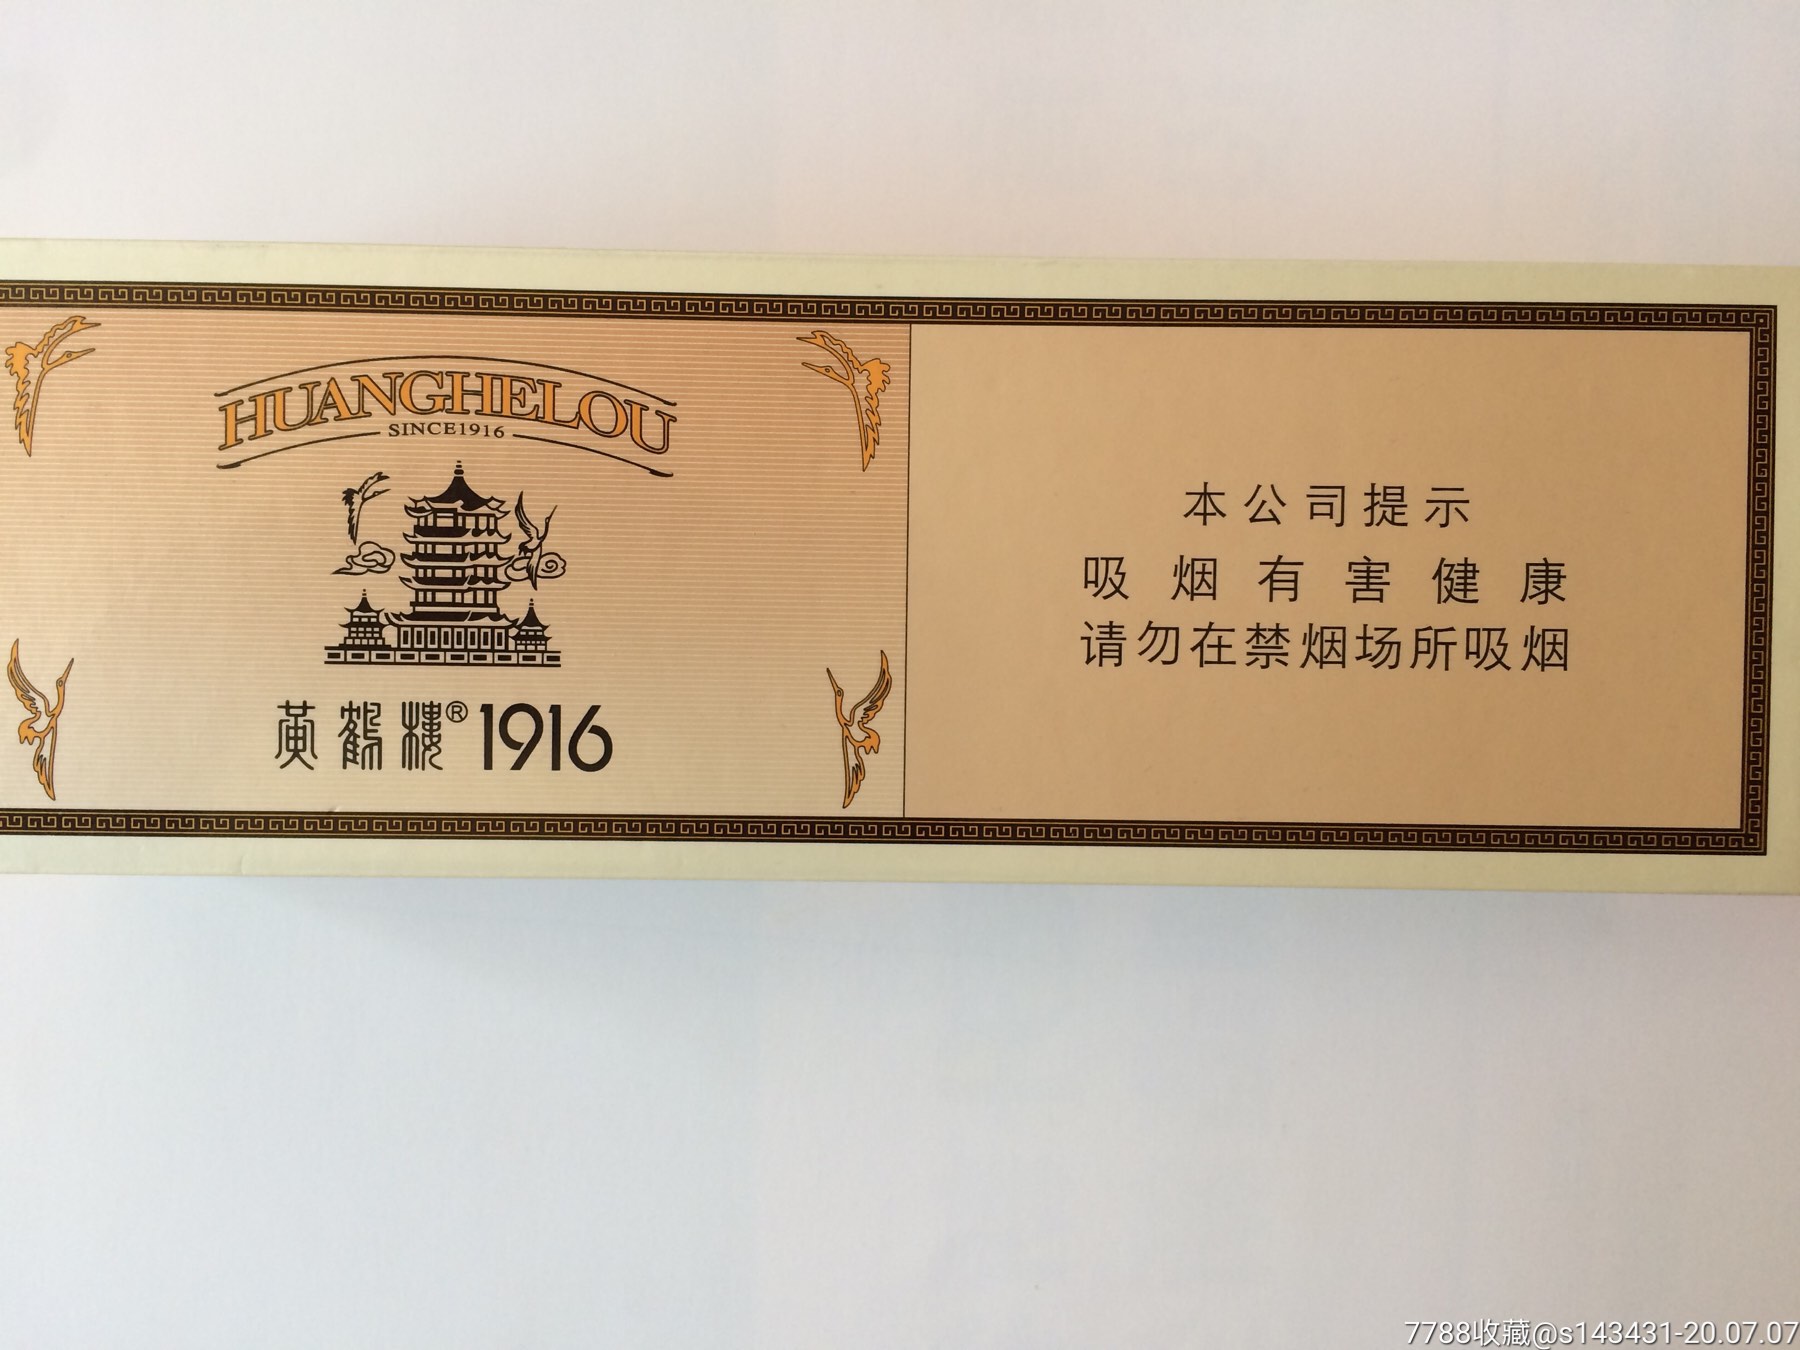 黄鹤楼1916赤壁香烟图片